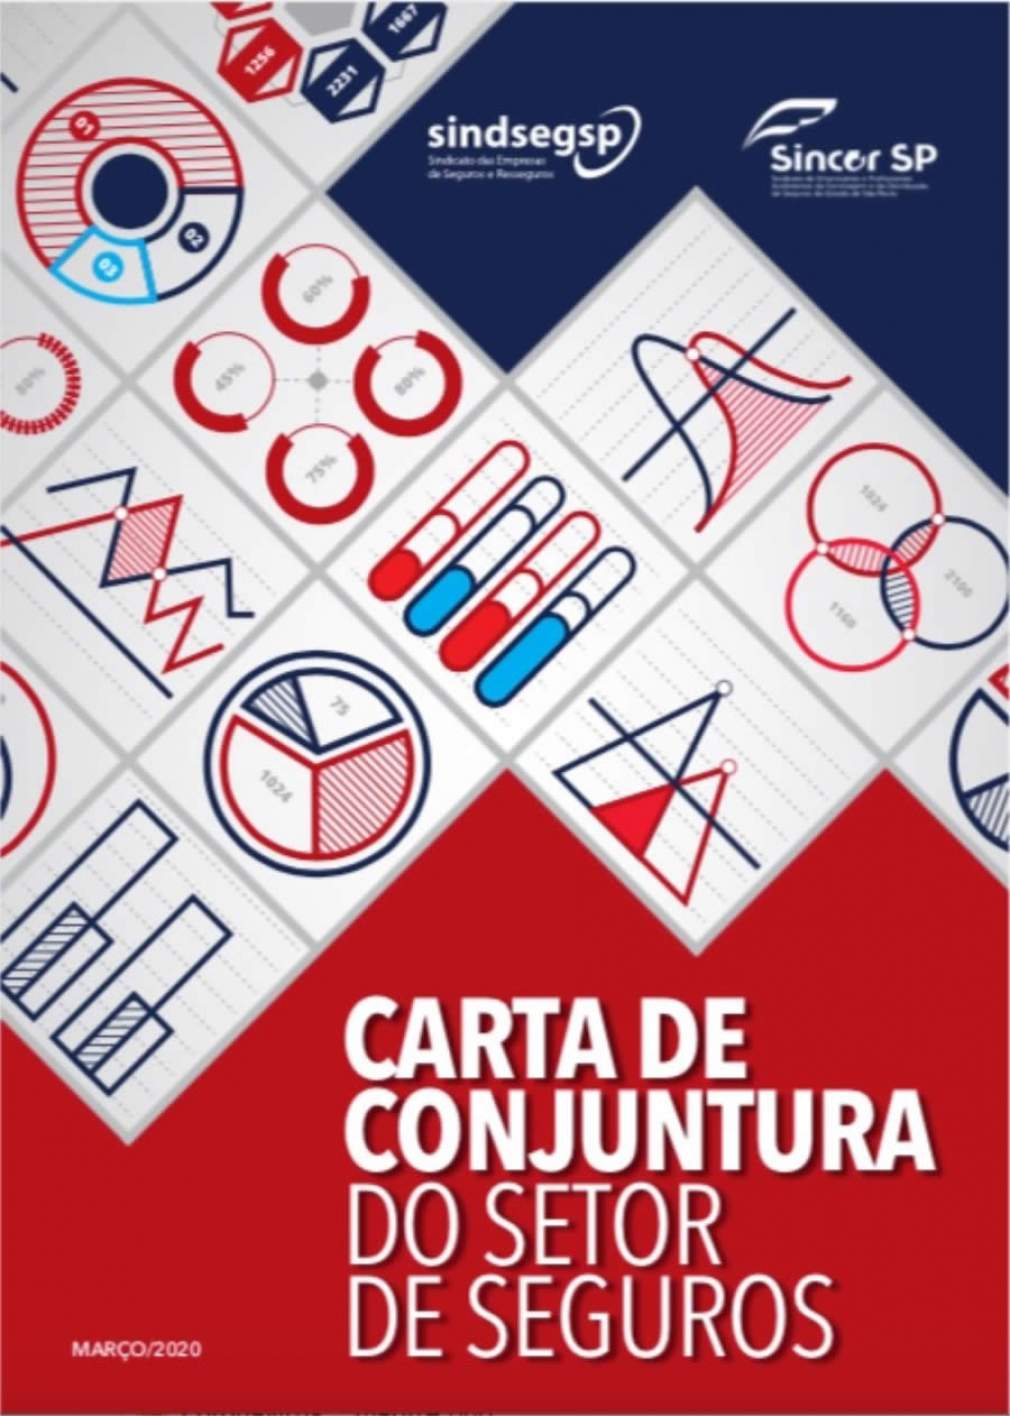 Carta de Conjuntura aborda os impactos do coronavírus na economia e no setor de seguros